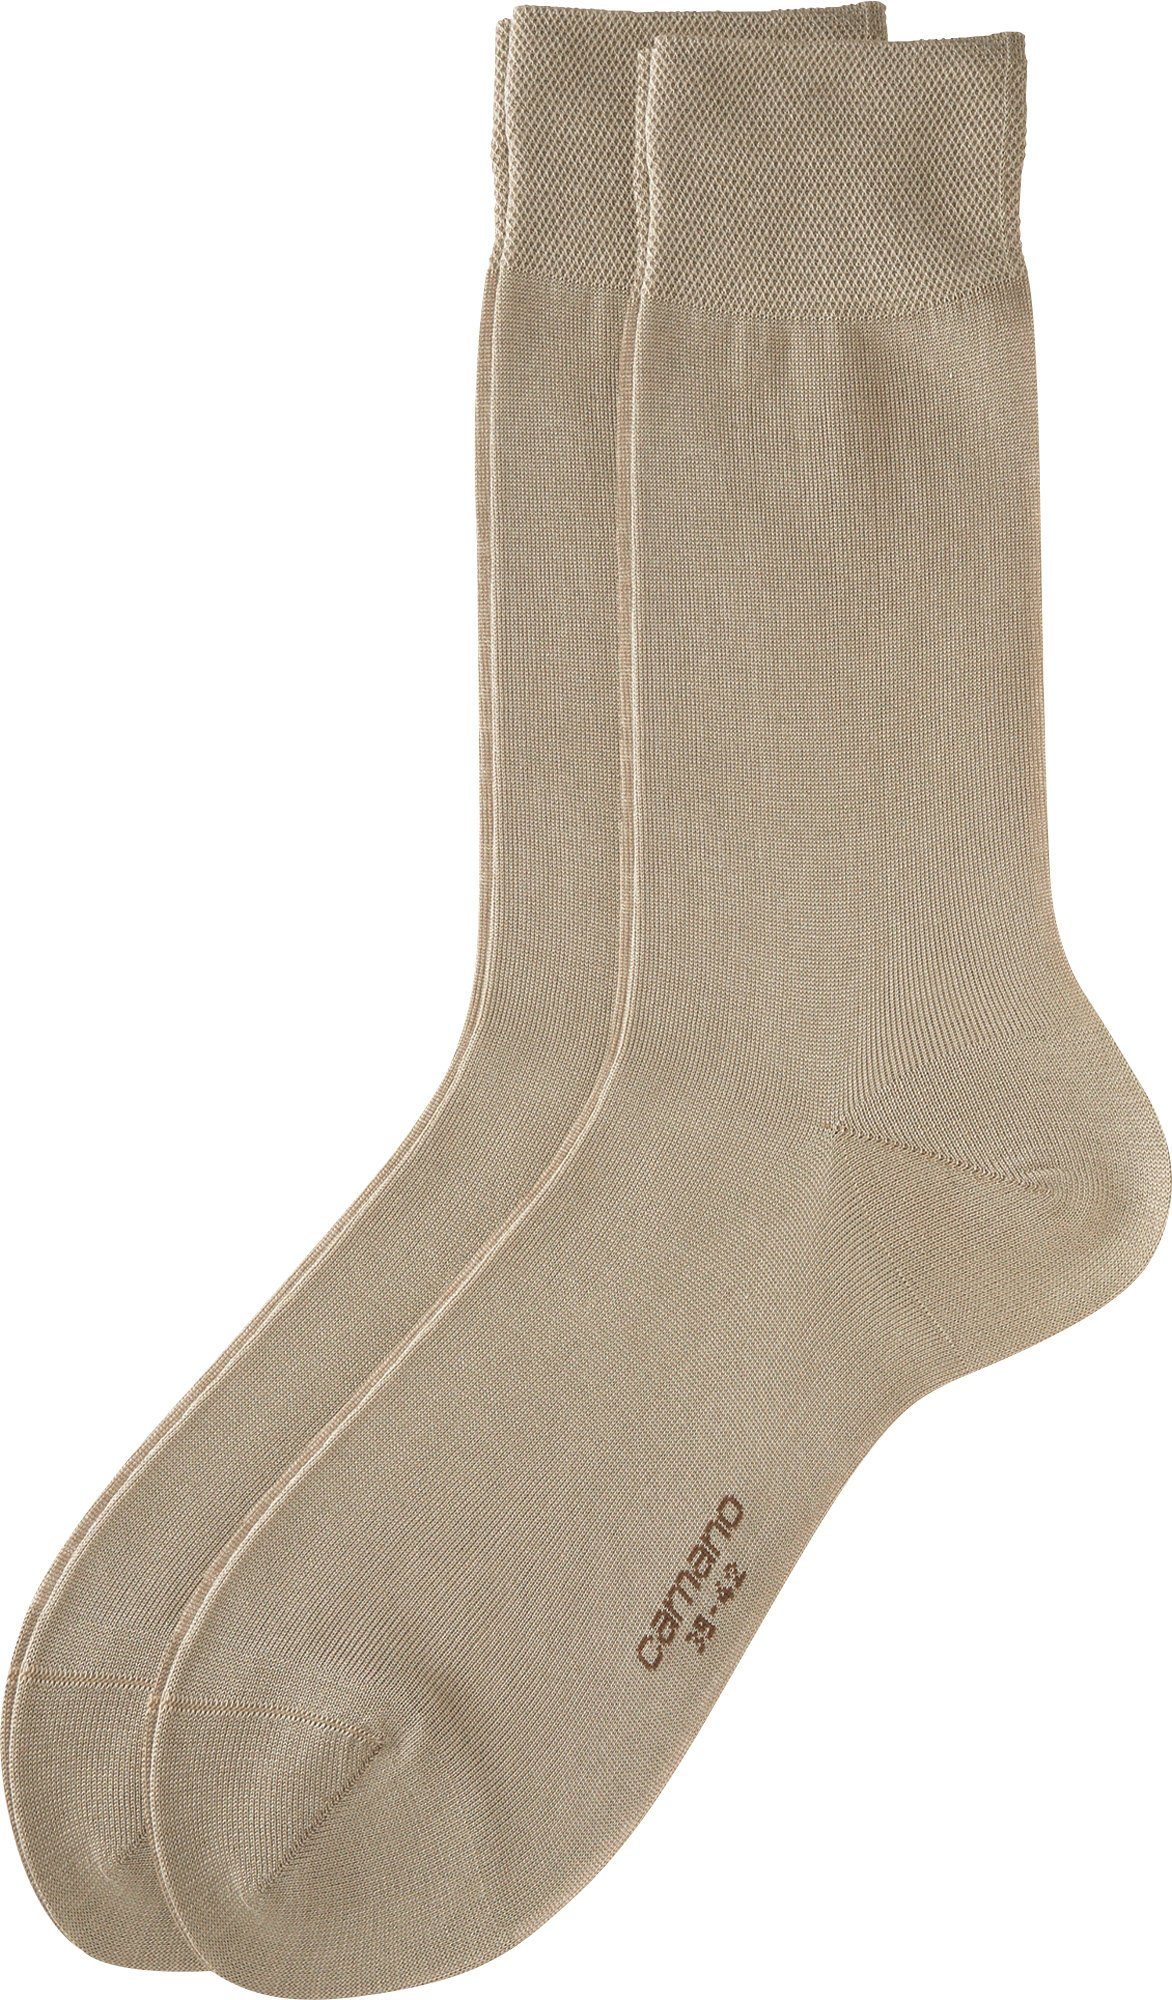 Uni 2 Socken beige Paar Herren Business-Socken Camano